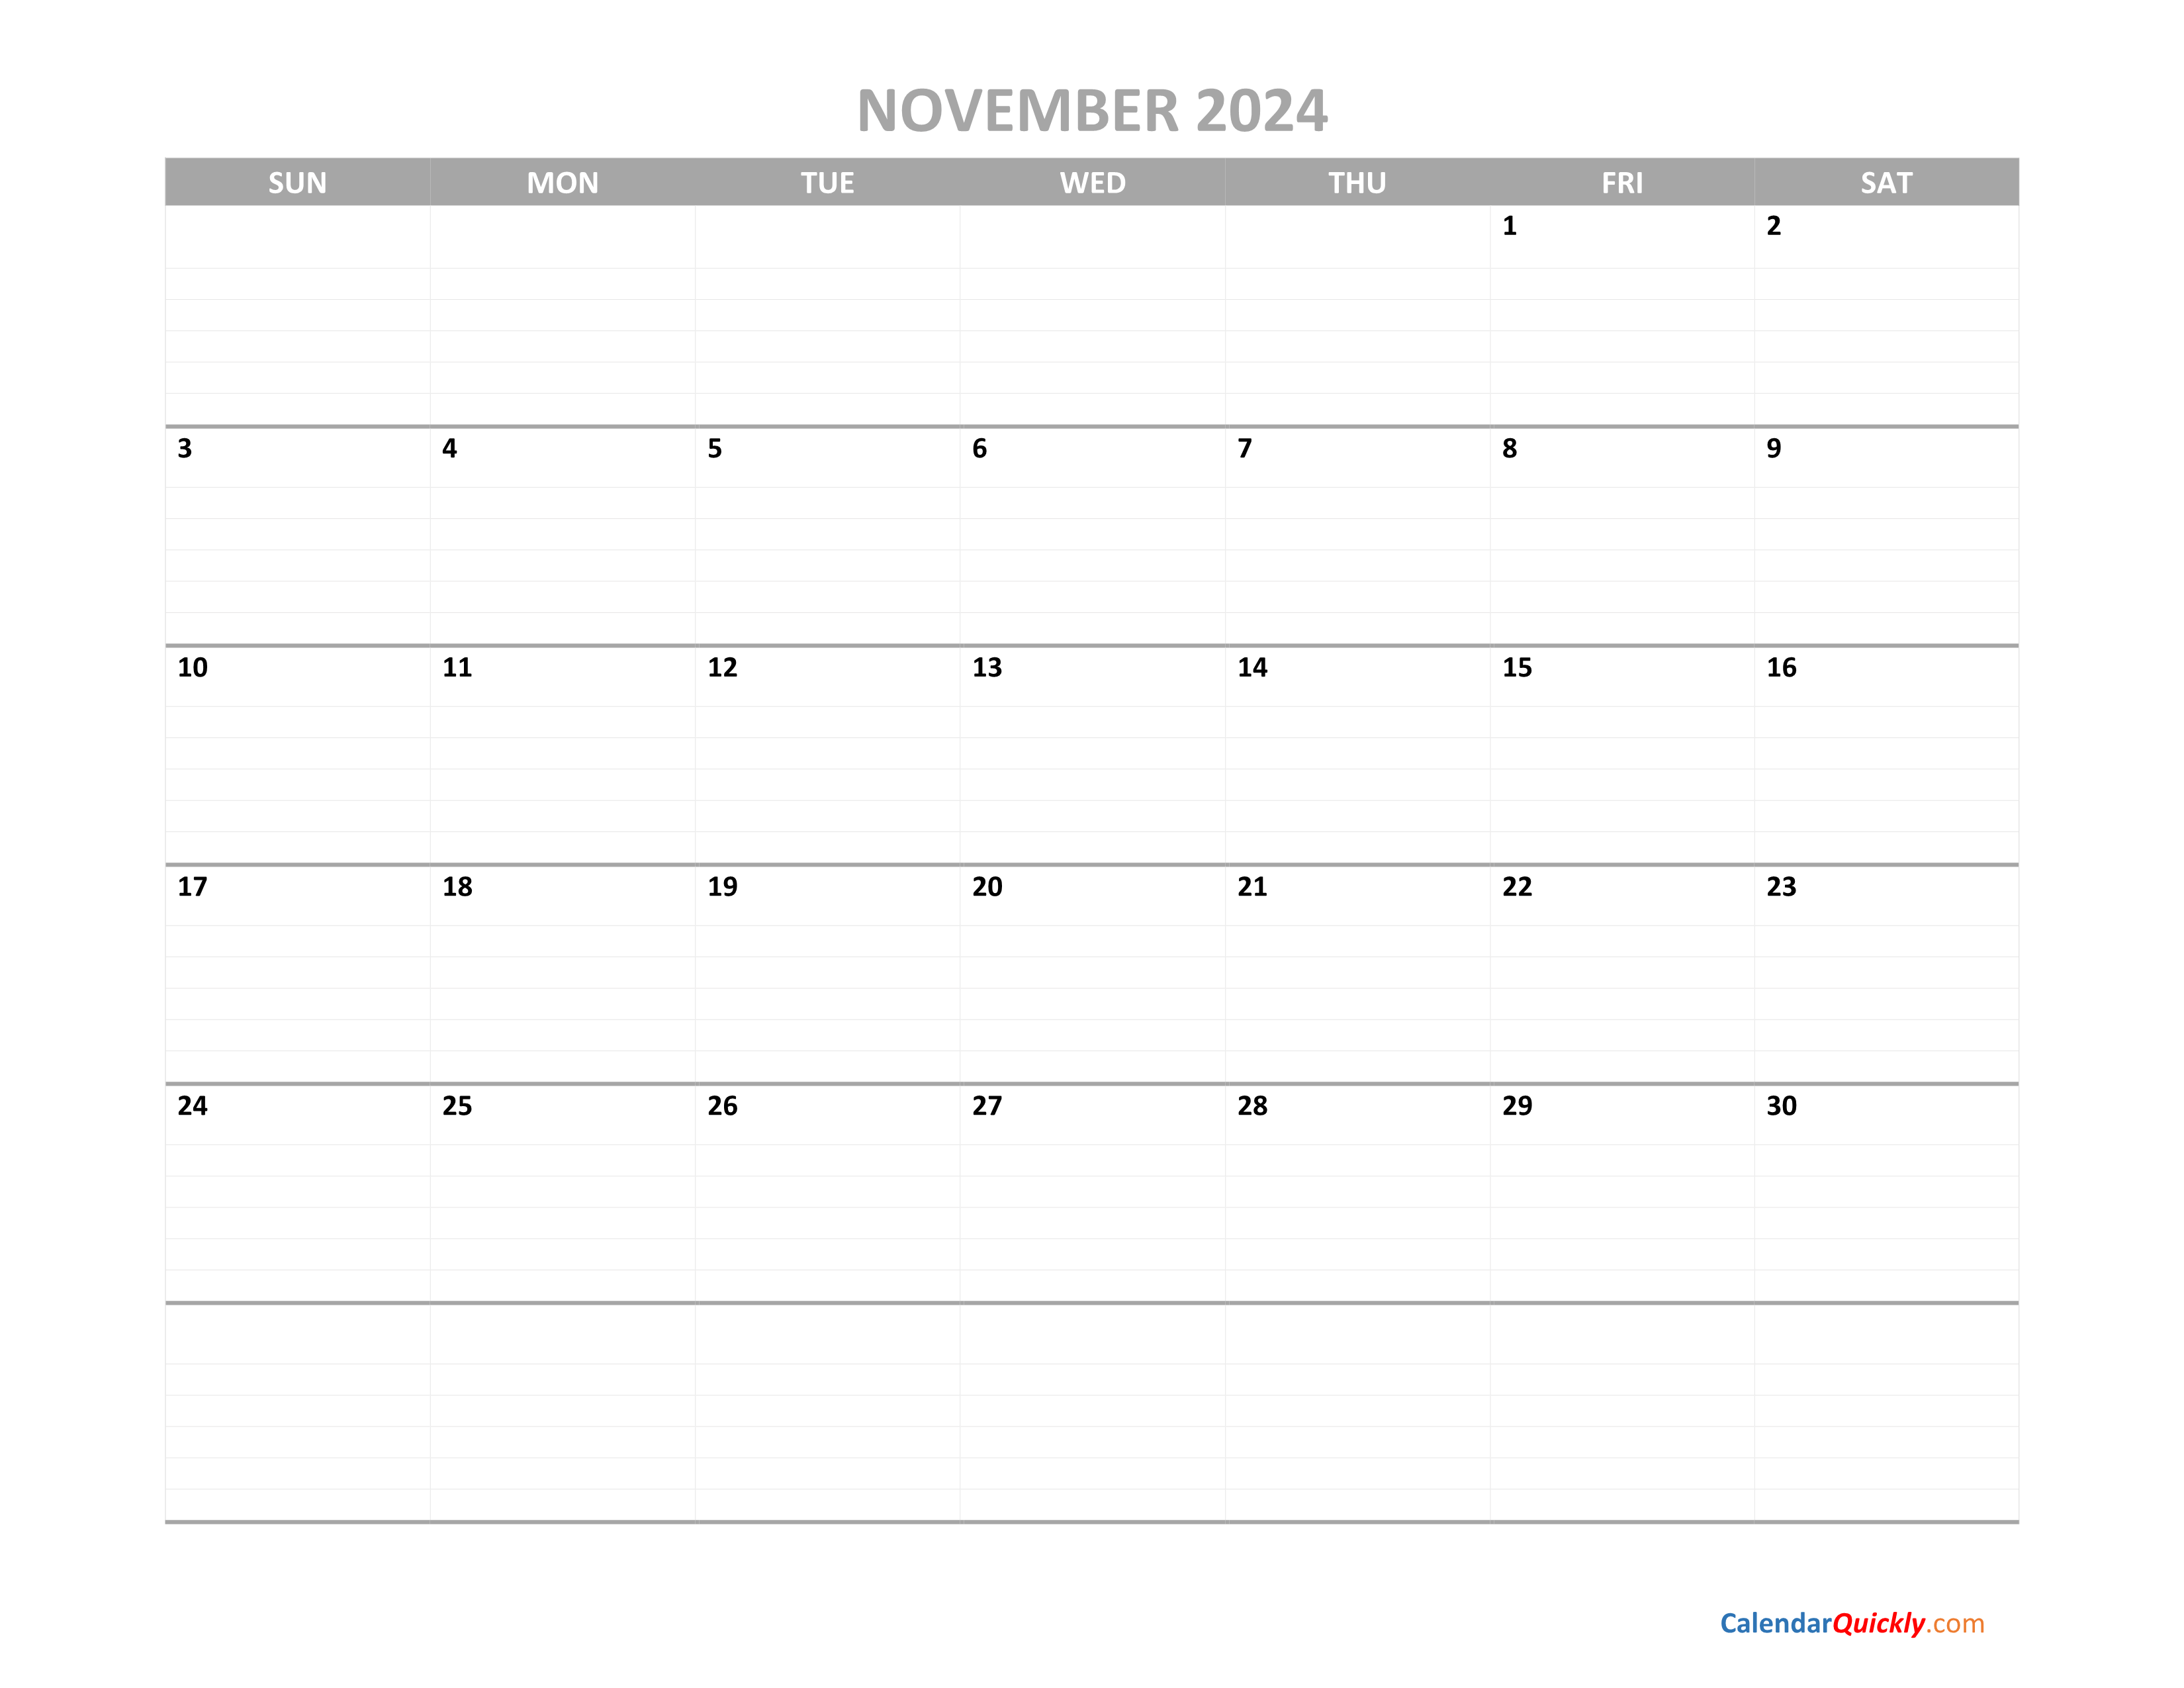 november-calendar-2024-printable-calendar-quickly